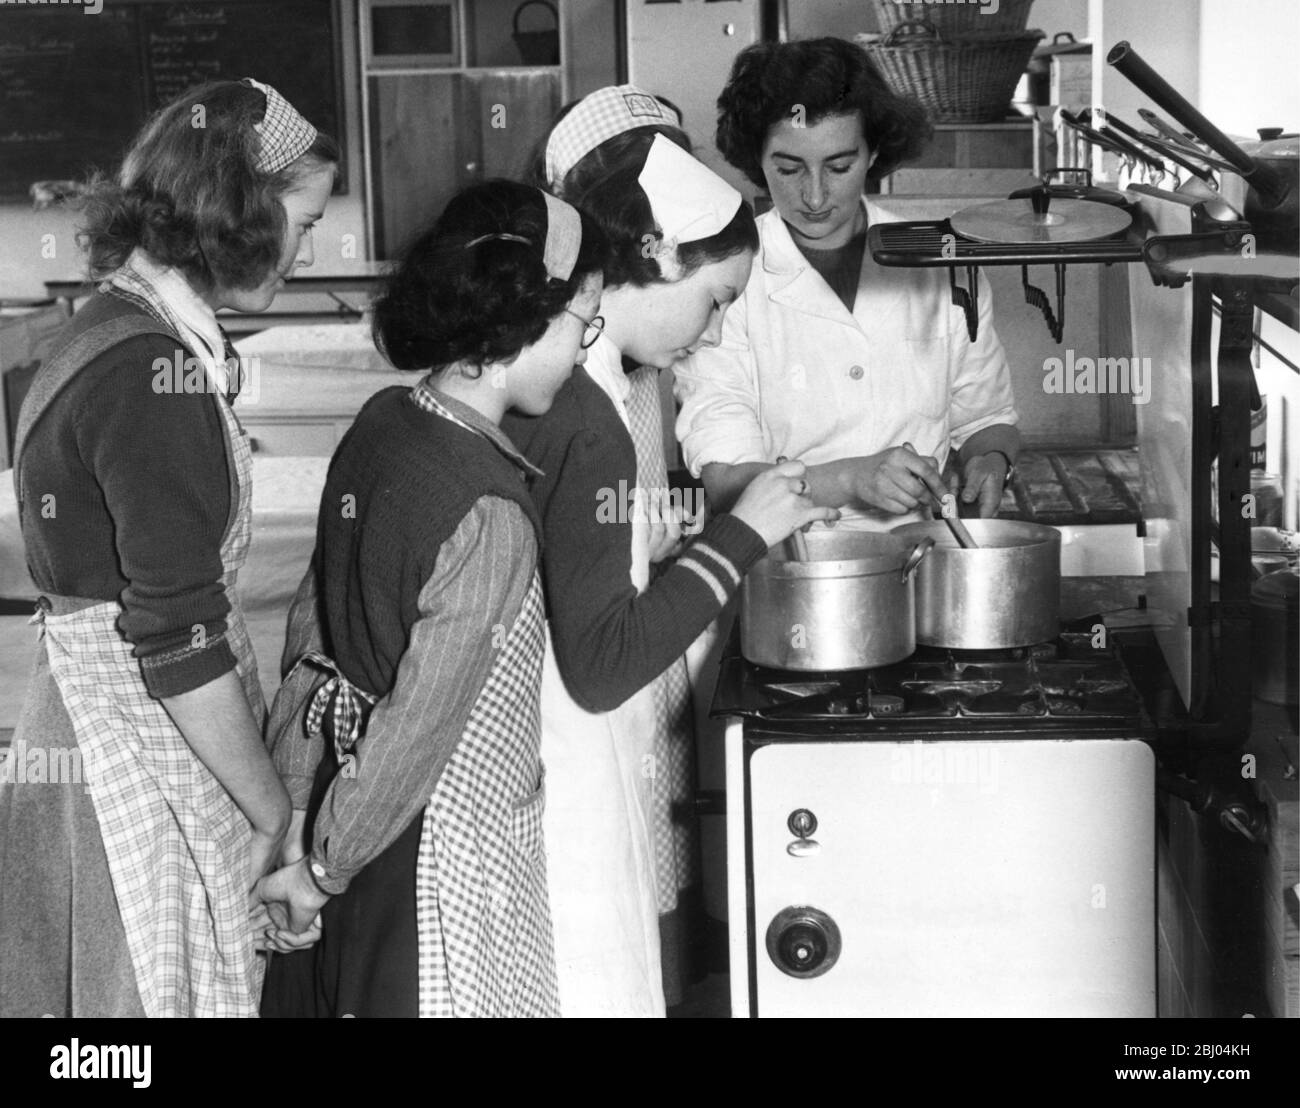 École secondaire moderne Barclay, Stevenage. Mlle Cleaver montre aux filles la bonne façon de cuisiner pendant une leçon de sciences domestiques. 1949 Banque D'Images